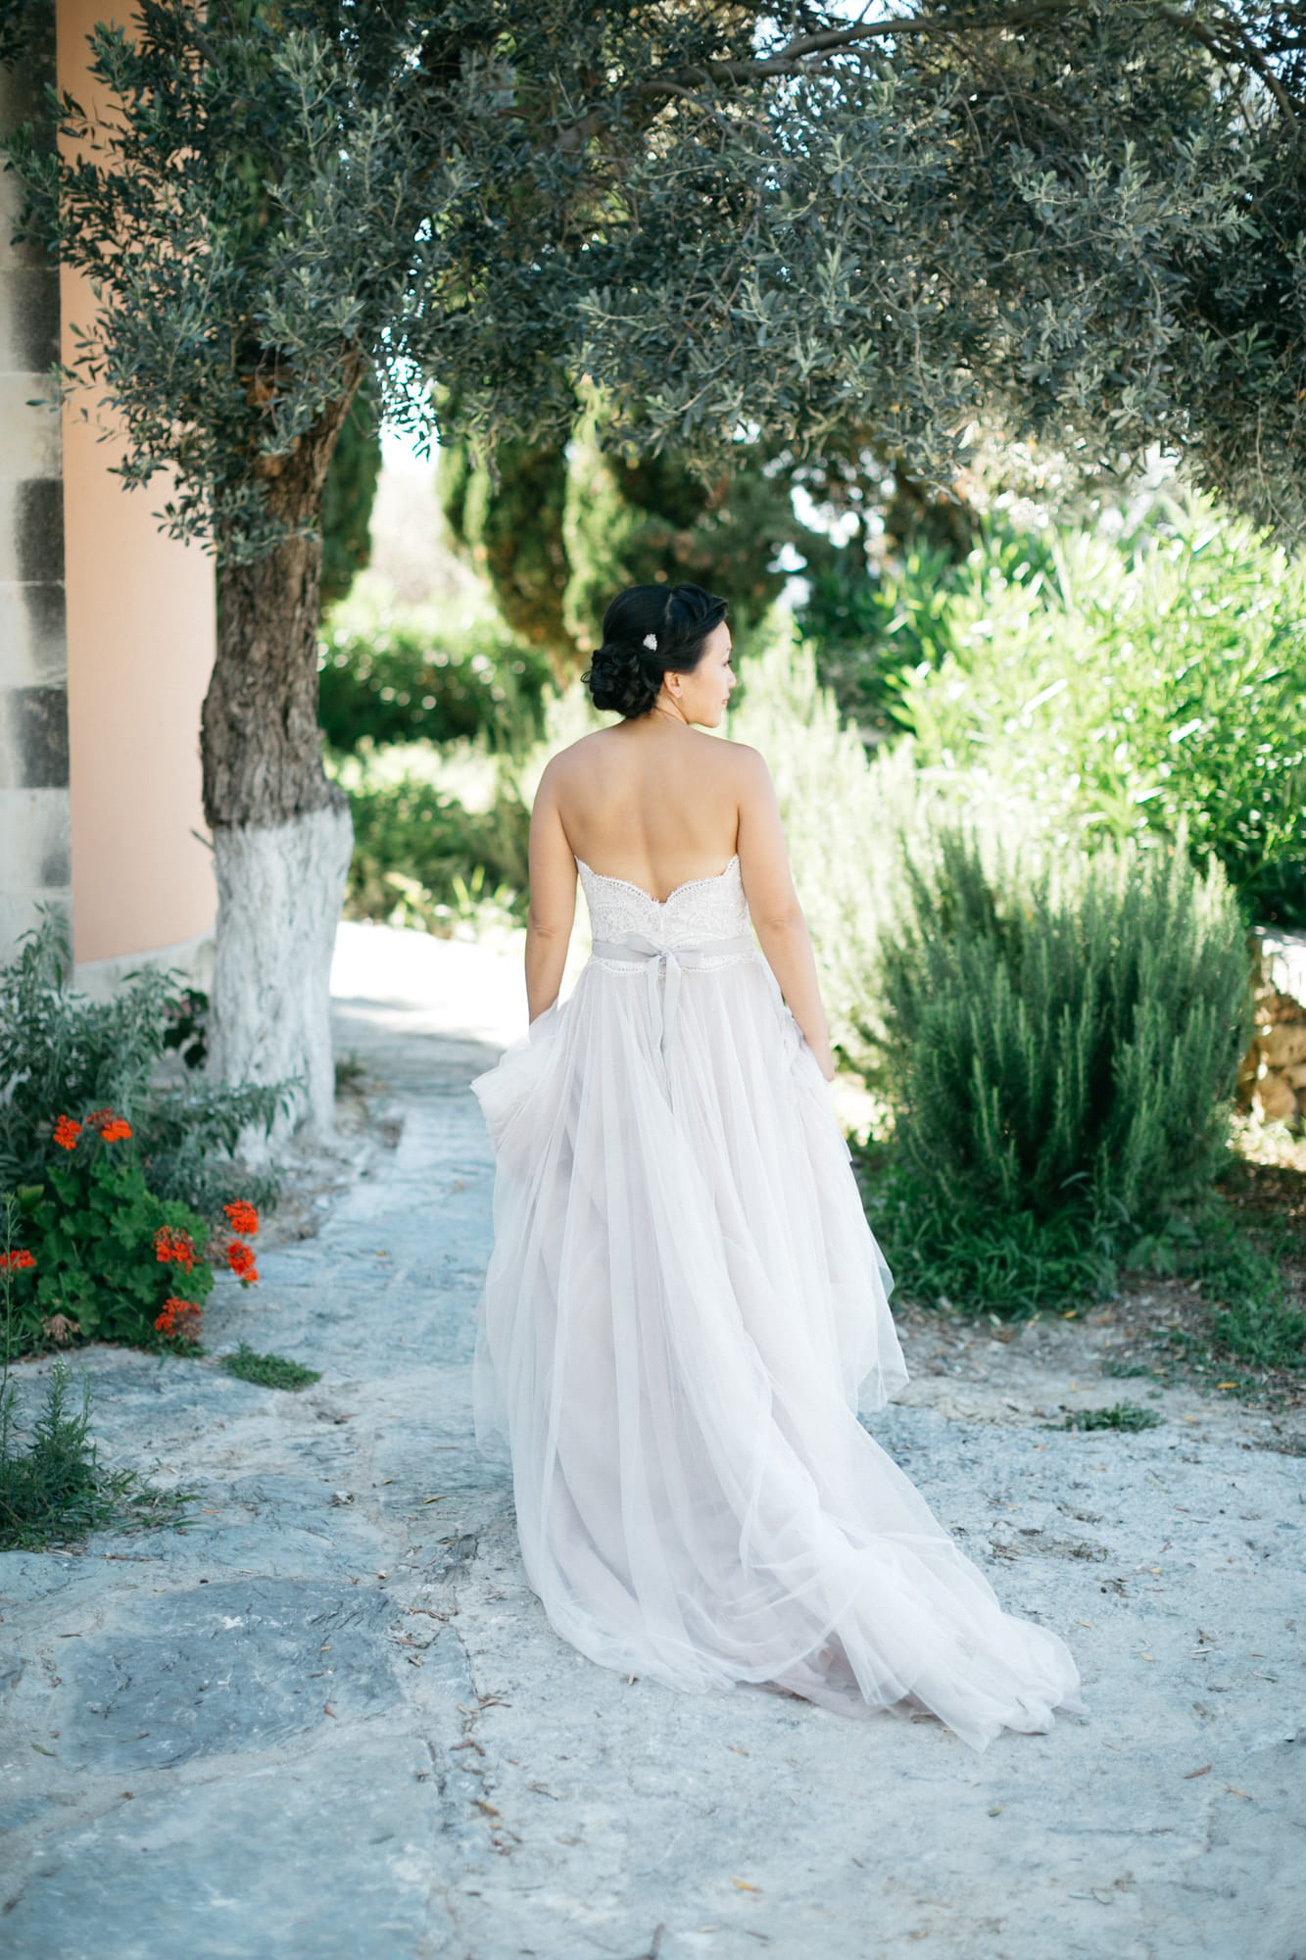 Elegant bride in Agreco Farms, Grecotel, Crete, Greece.